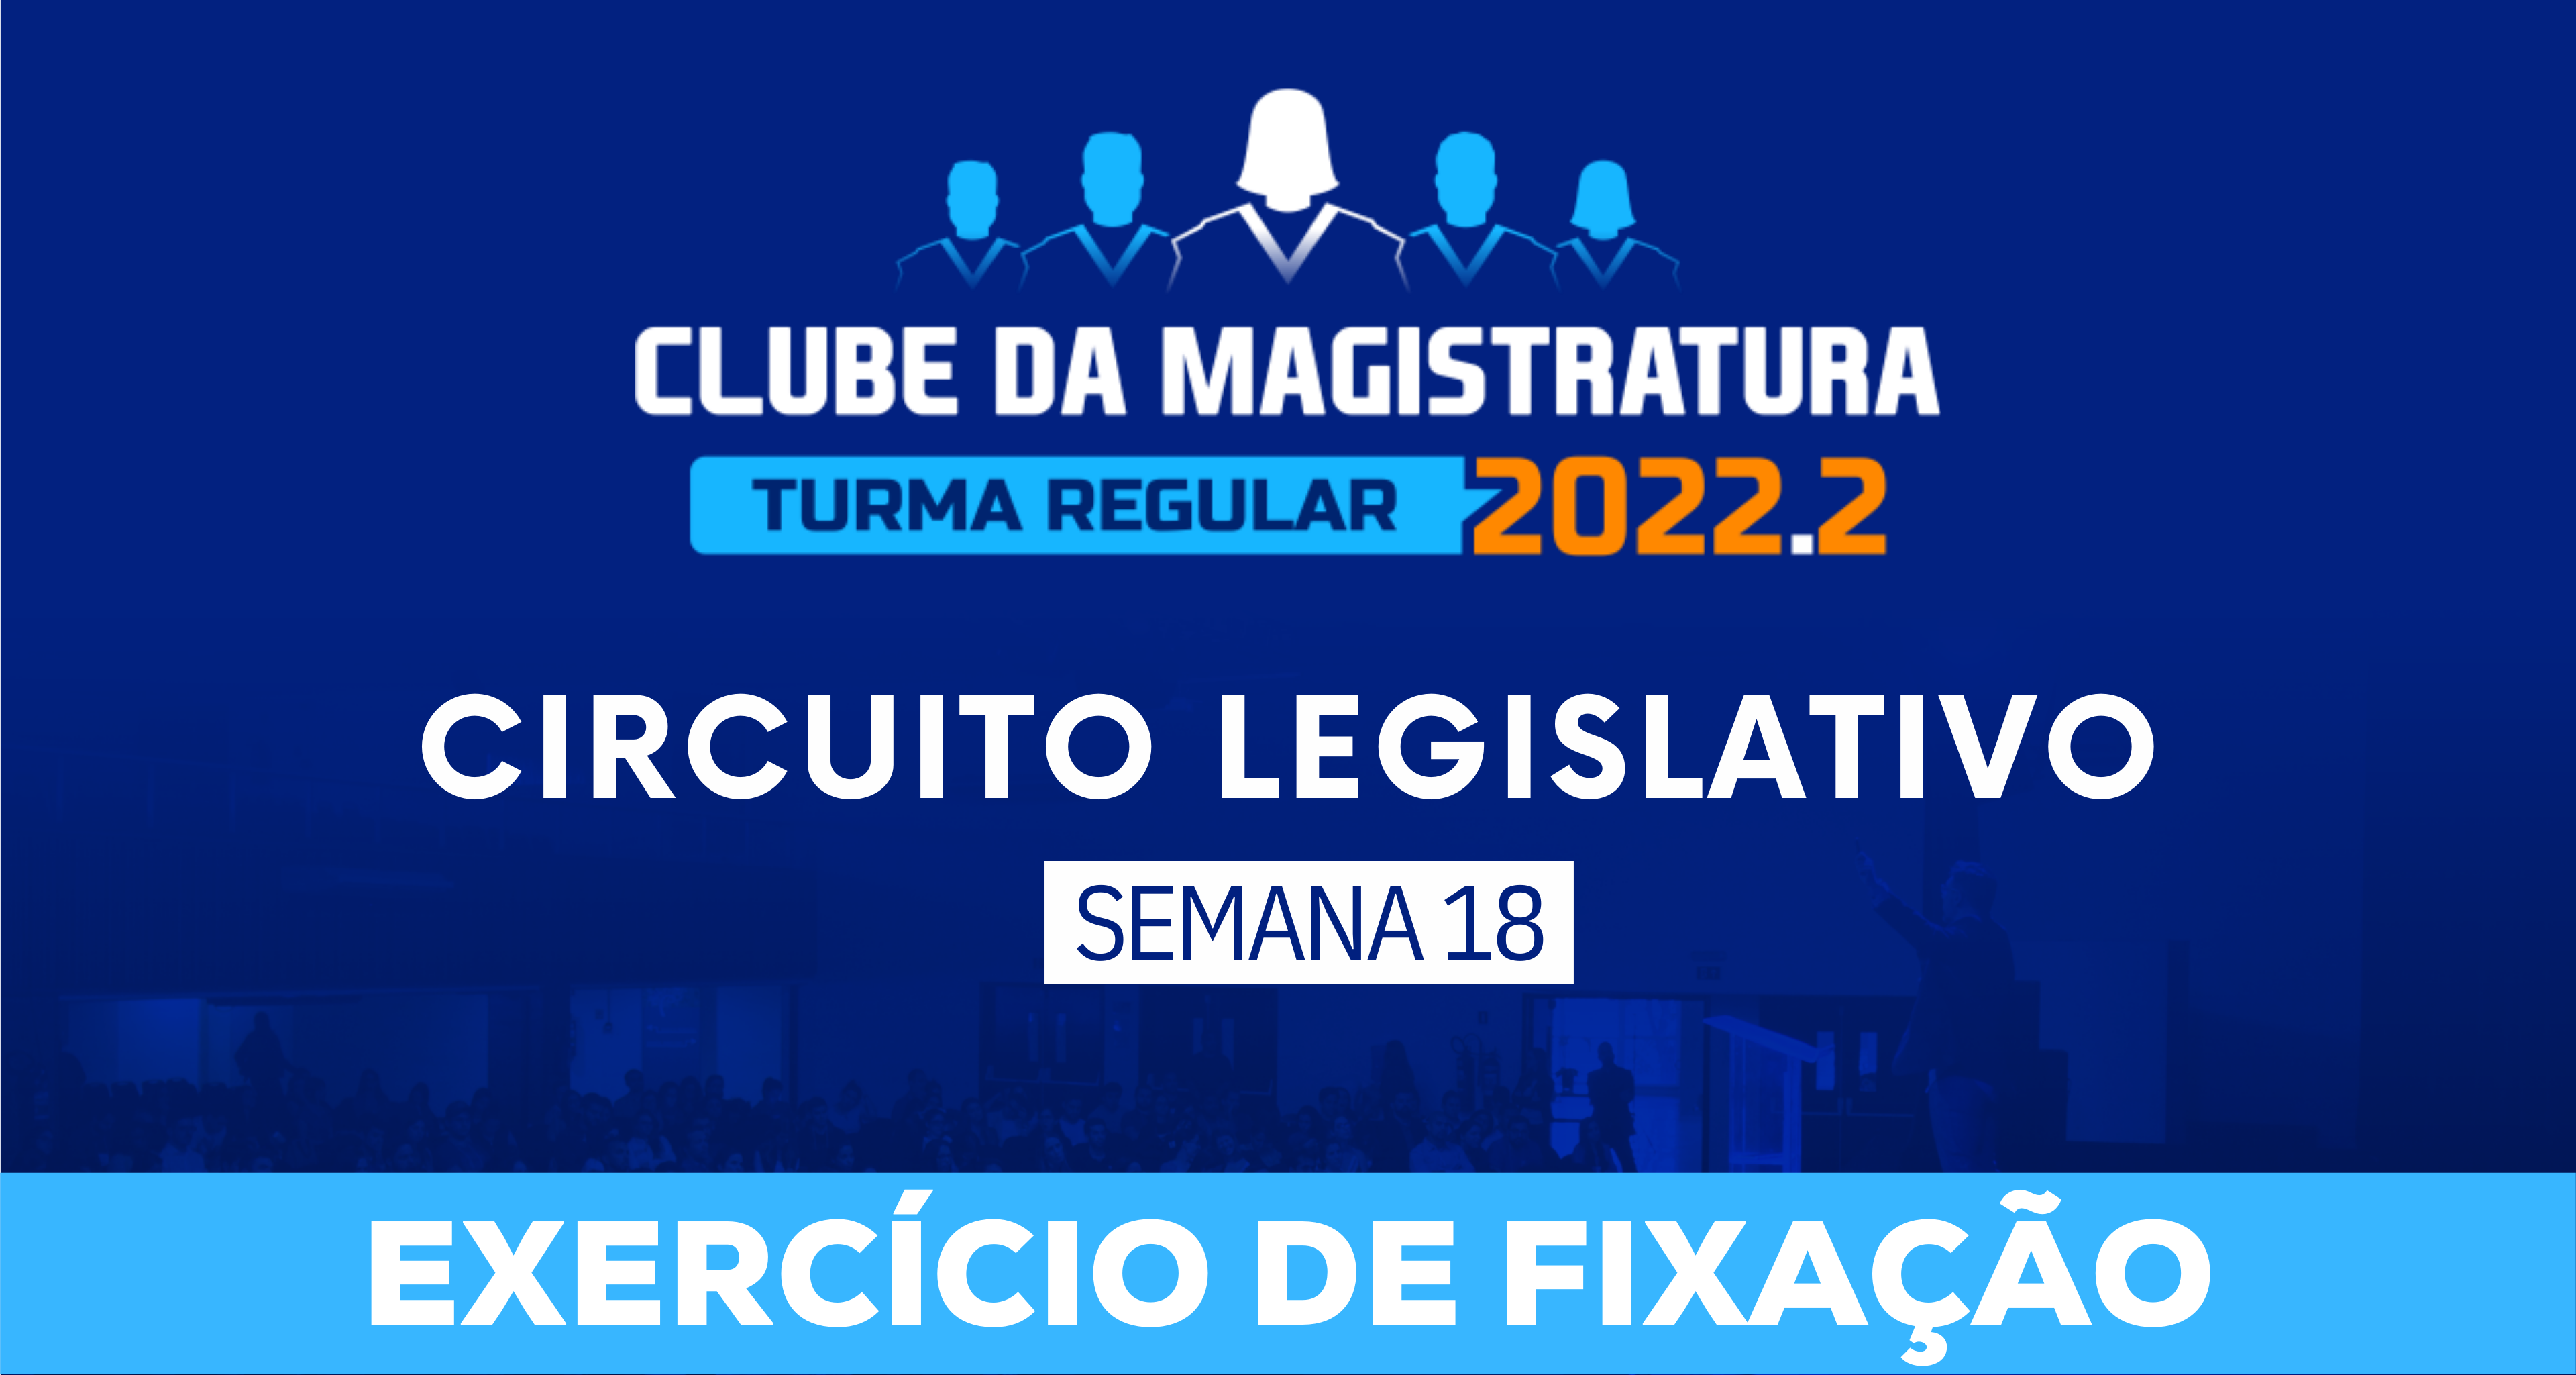 Circuito Legislativo 2022.2 (Clube da Magistratura - Semana 18)